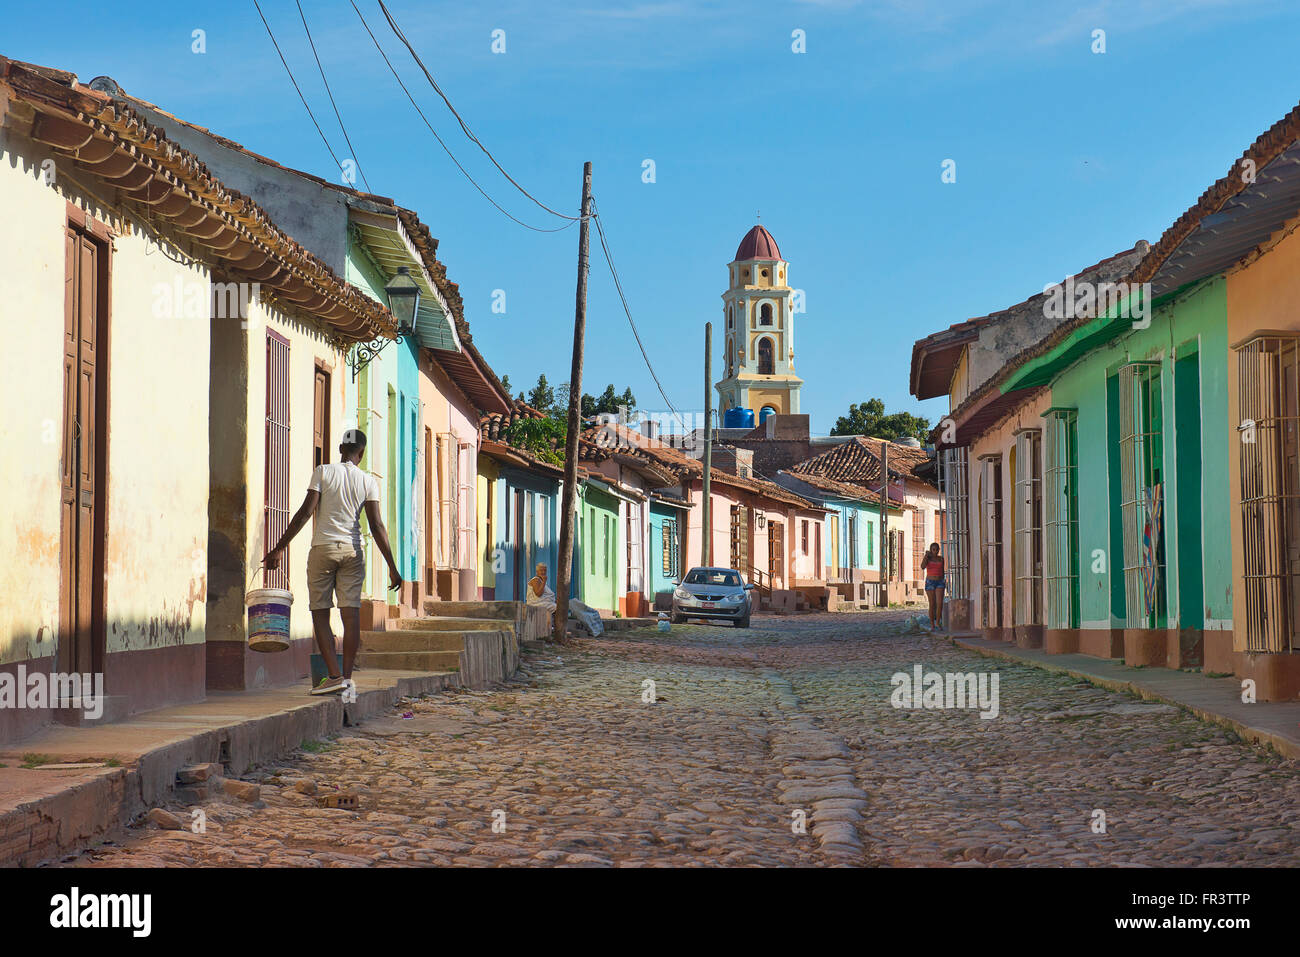 Una strada della vecchia città coloniale di Trinidad, Cuba con la Iglesia y Convento de San Francisco in background. Foto Stock